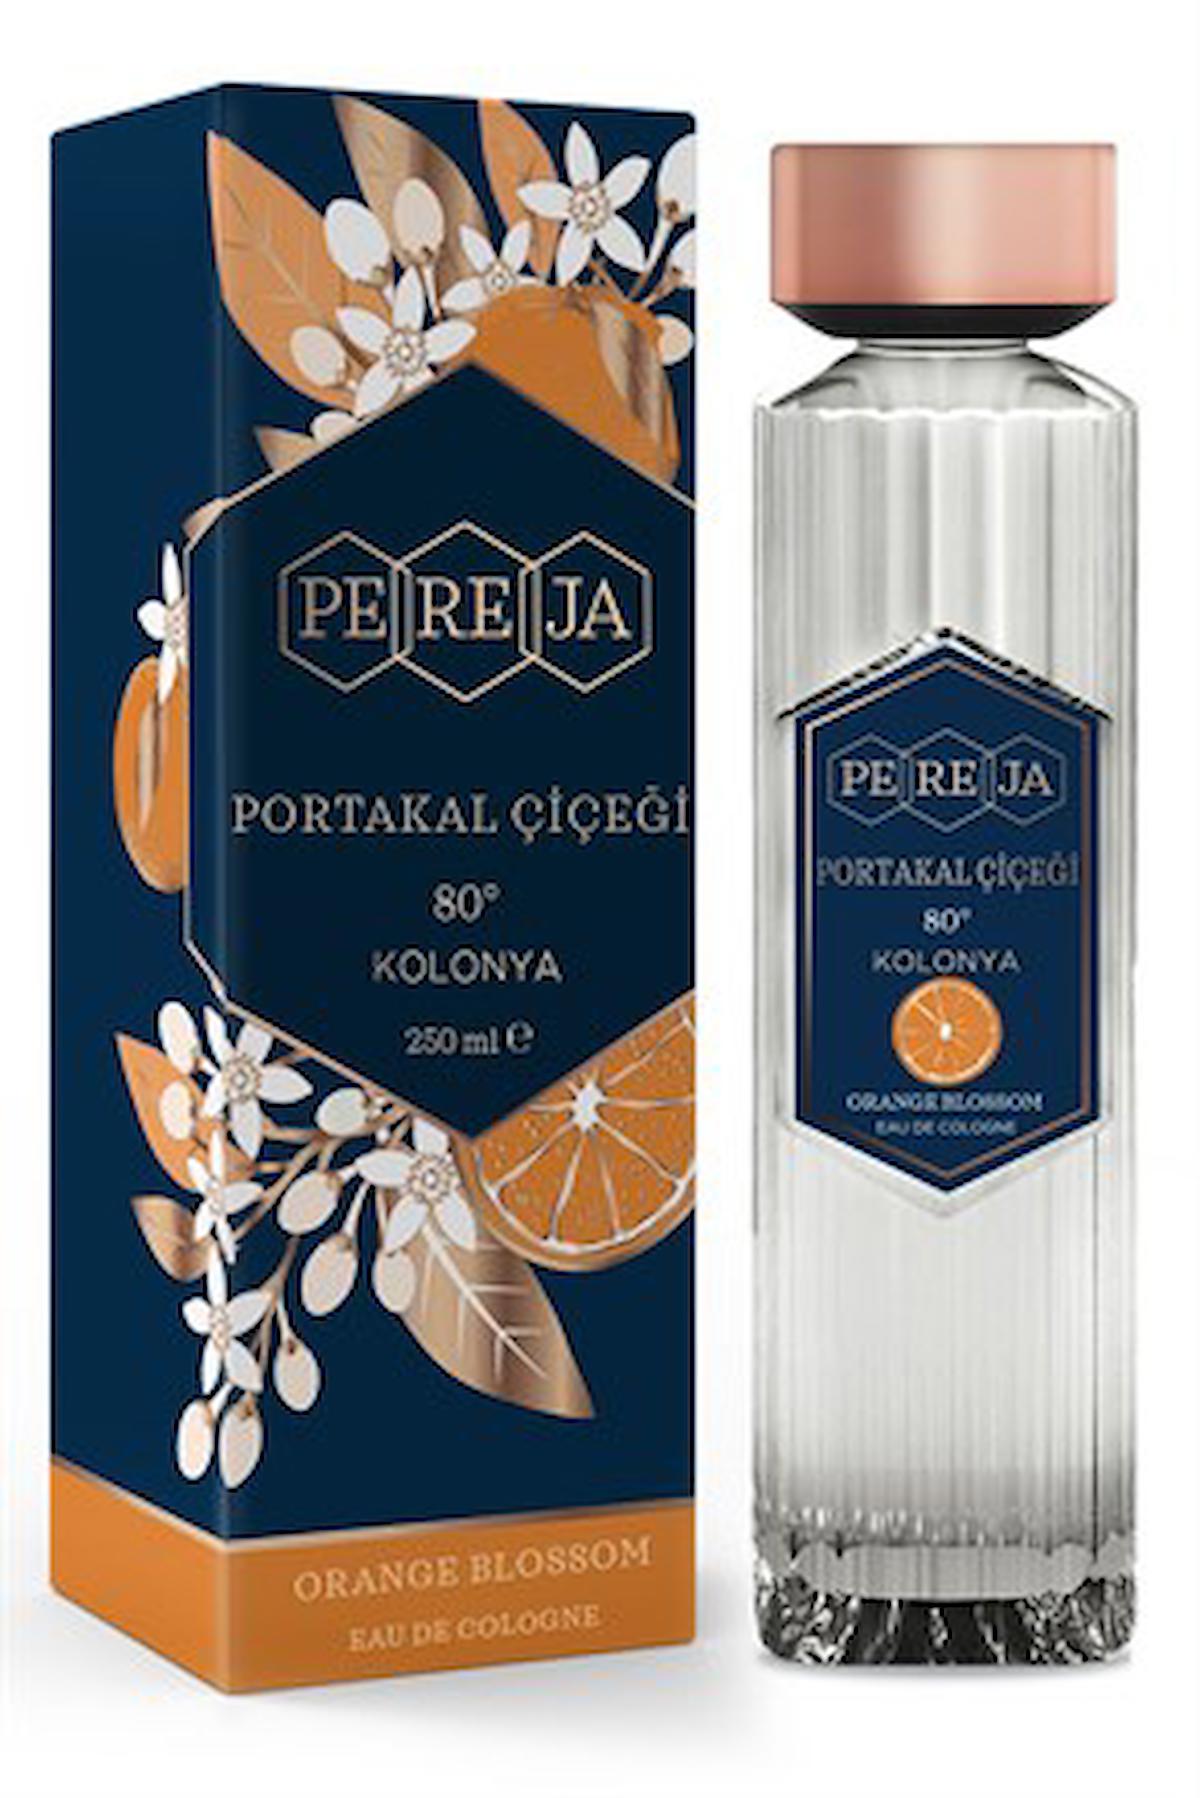 Pereja Portakal Çiçeği Cam Şişe Kolonya 250 ml